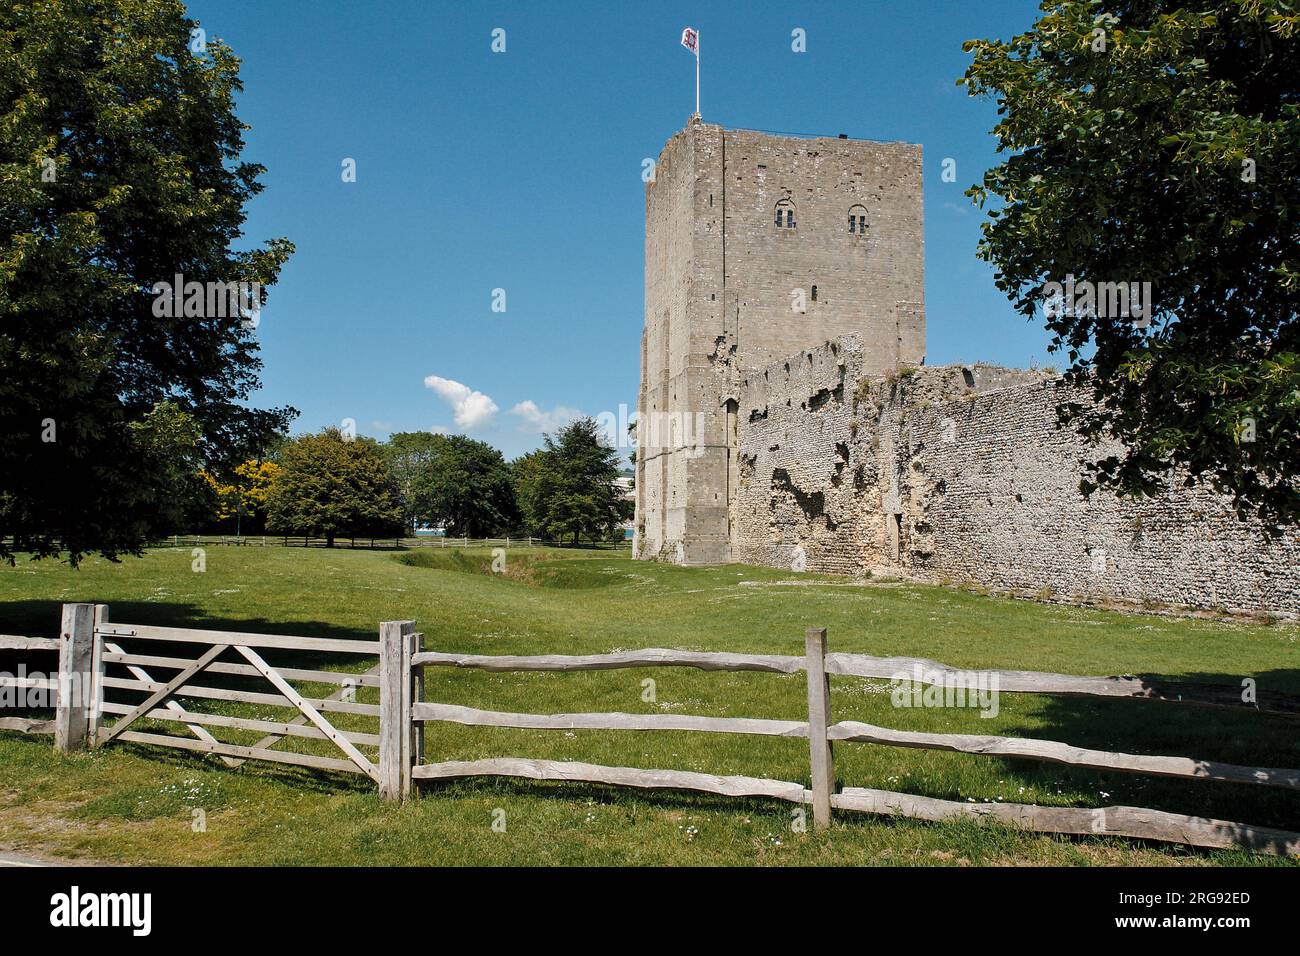 Vista del castello di Portchester, vicino a Portsmouth, Hampshire. Costruito come forte romano alla fine del III secolo, divenne un castello normanno nel XII secolo, Riccardo II ne trasformò parte in un palazzo nel 1396, e Enrico V partì da qui nel 1415. Foto Stock